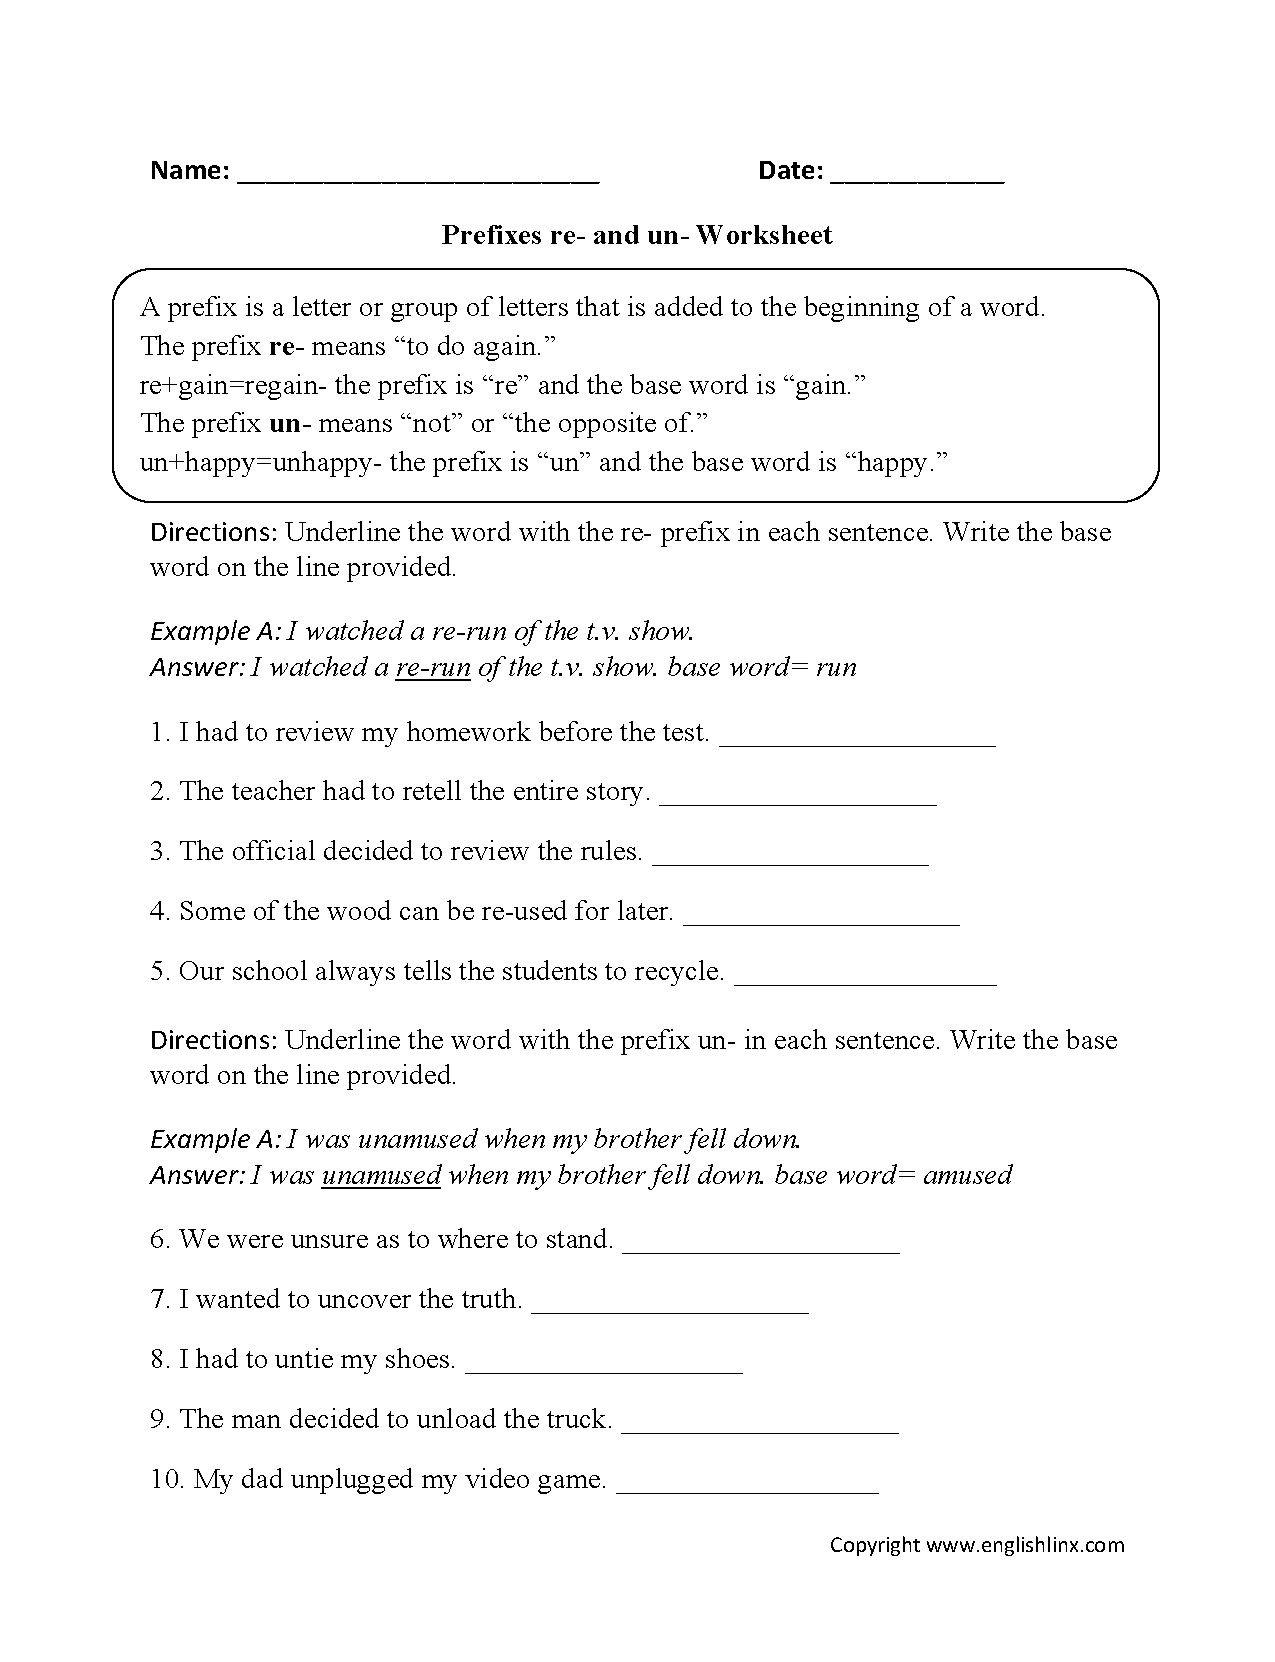 Prefixes re- and un- Worksheets